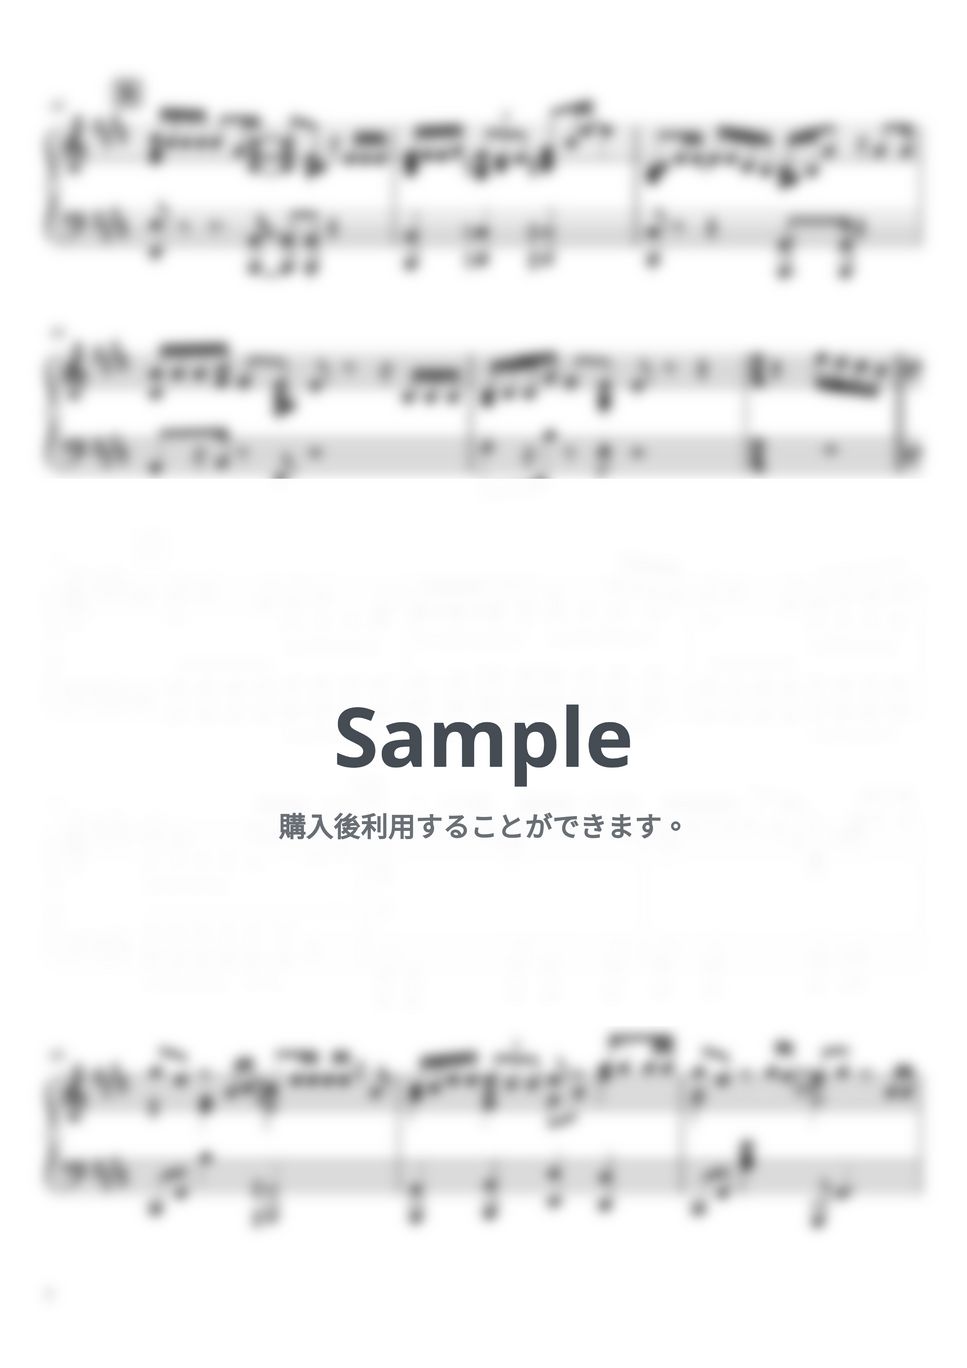 マカロニえんぴつ - なんでもないよ、 (ピアノソロ / 上級) by SuperMomoFactory